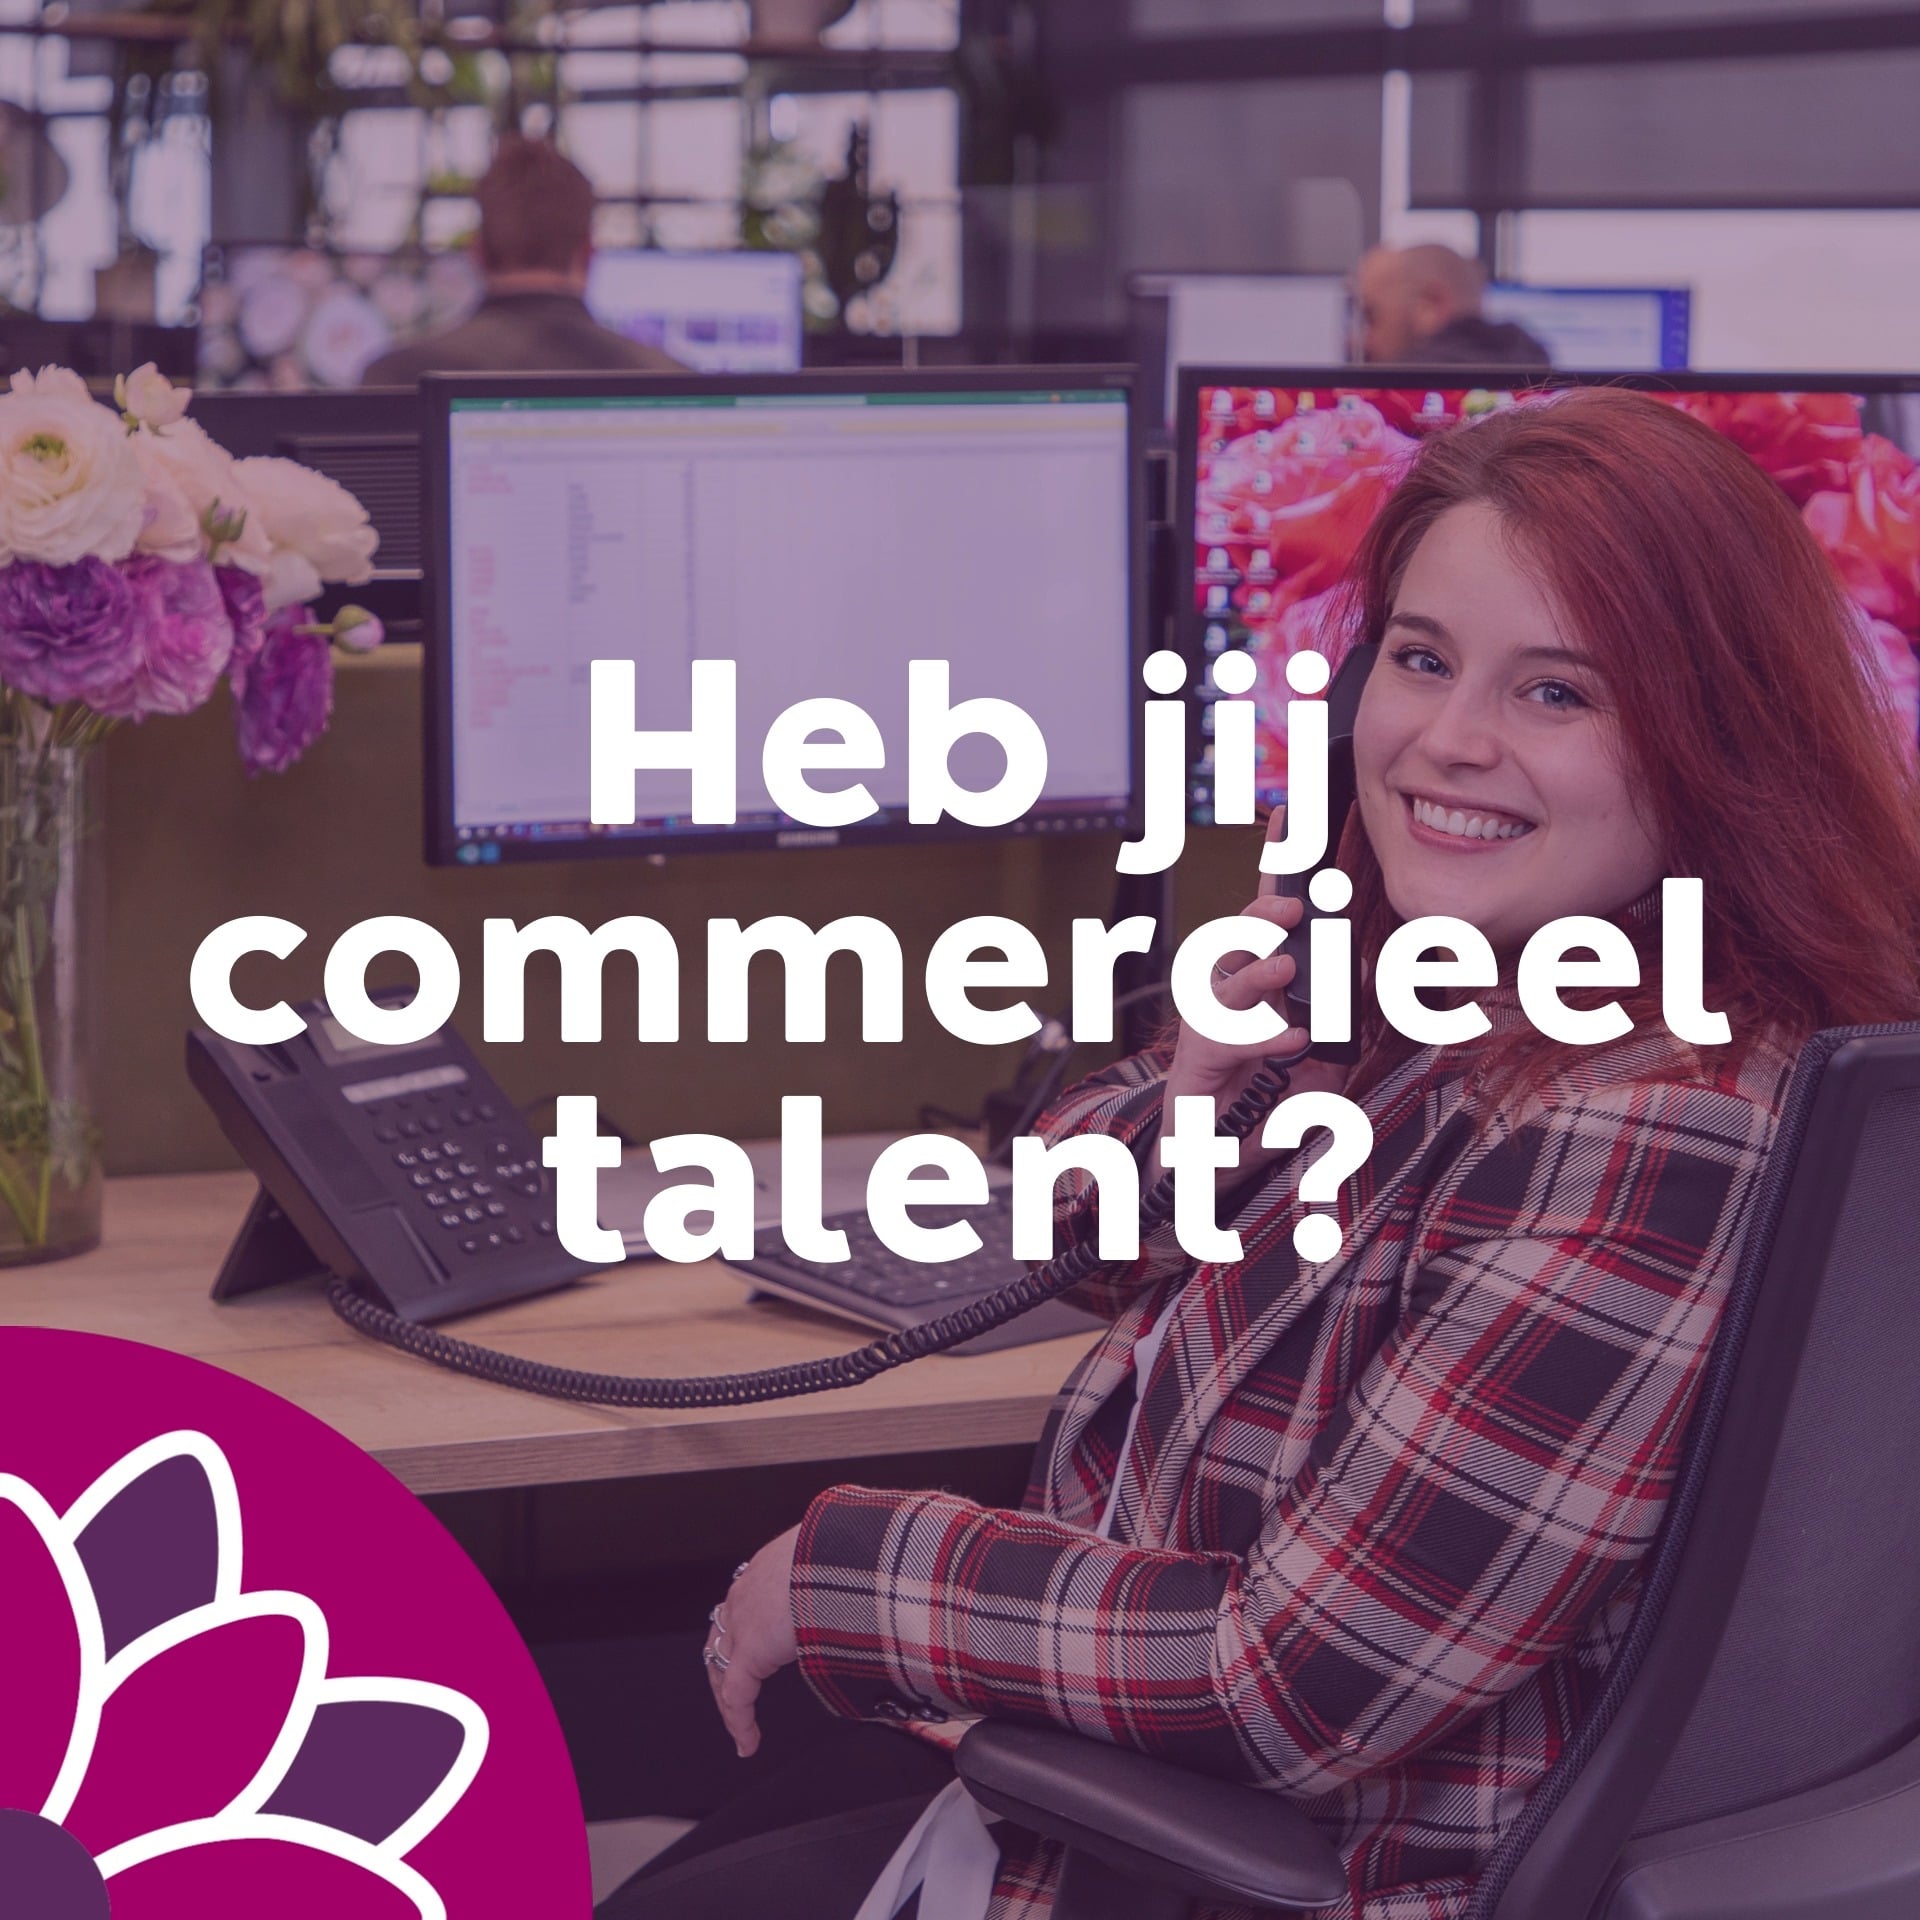 𝗛𝗲𝗯 𝗷𝗶𝗷 𝗰𝗼𝗺𝗺𝗲𝗿𝗰𝗶𝗲𝗲𝗹 𝘁𝗮𝗹𝗲𝗻𝘁?<br/><br/>én ben je op zoek naar een toffe functie bij een internationale speler? Wij zijn voor onze locatie in Westland/Aalsmeer op zoek naar een enthousiast en commercieel talent, dat zich vast wil bijten in het vak van junior accountmanager bij één van de grootste bloemenexporteurs van Nederland. Herken jij jezelf hierin?<br/><br/>Lees dan snel verder 👇🏼<br/><br/>https://www.hamifleurs.nl/hami/nl/EUR/vacaturejunioraccountmanager